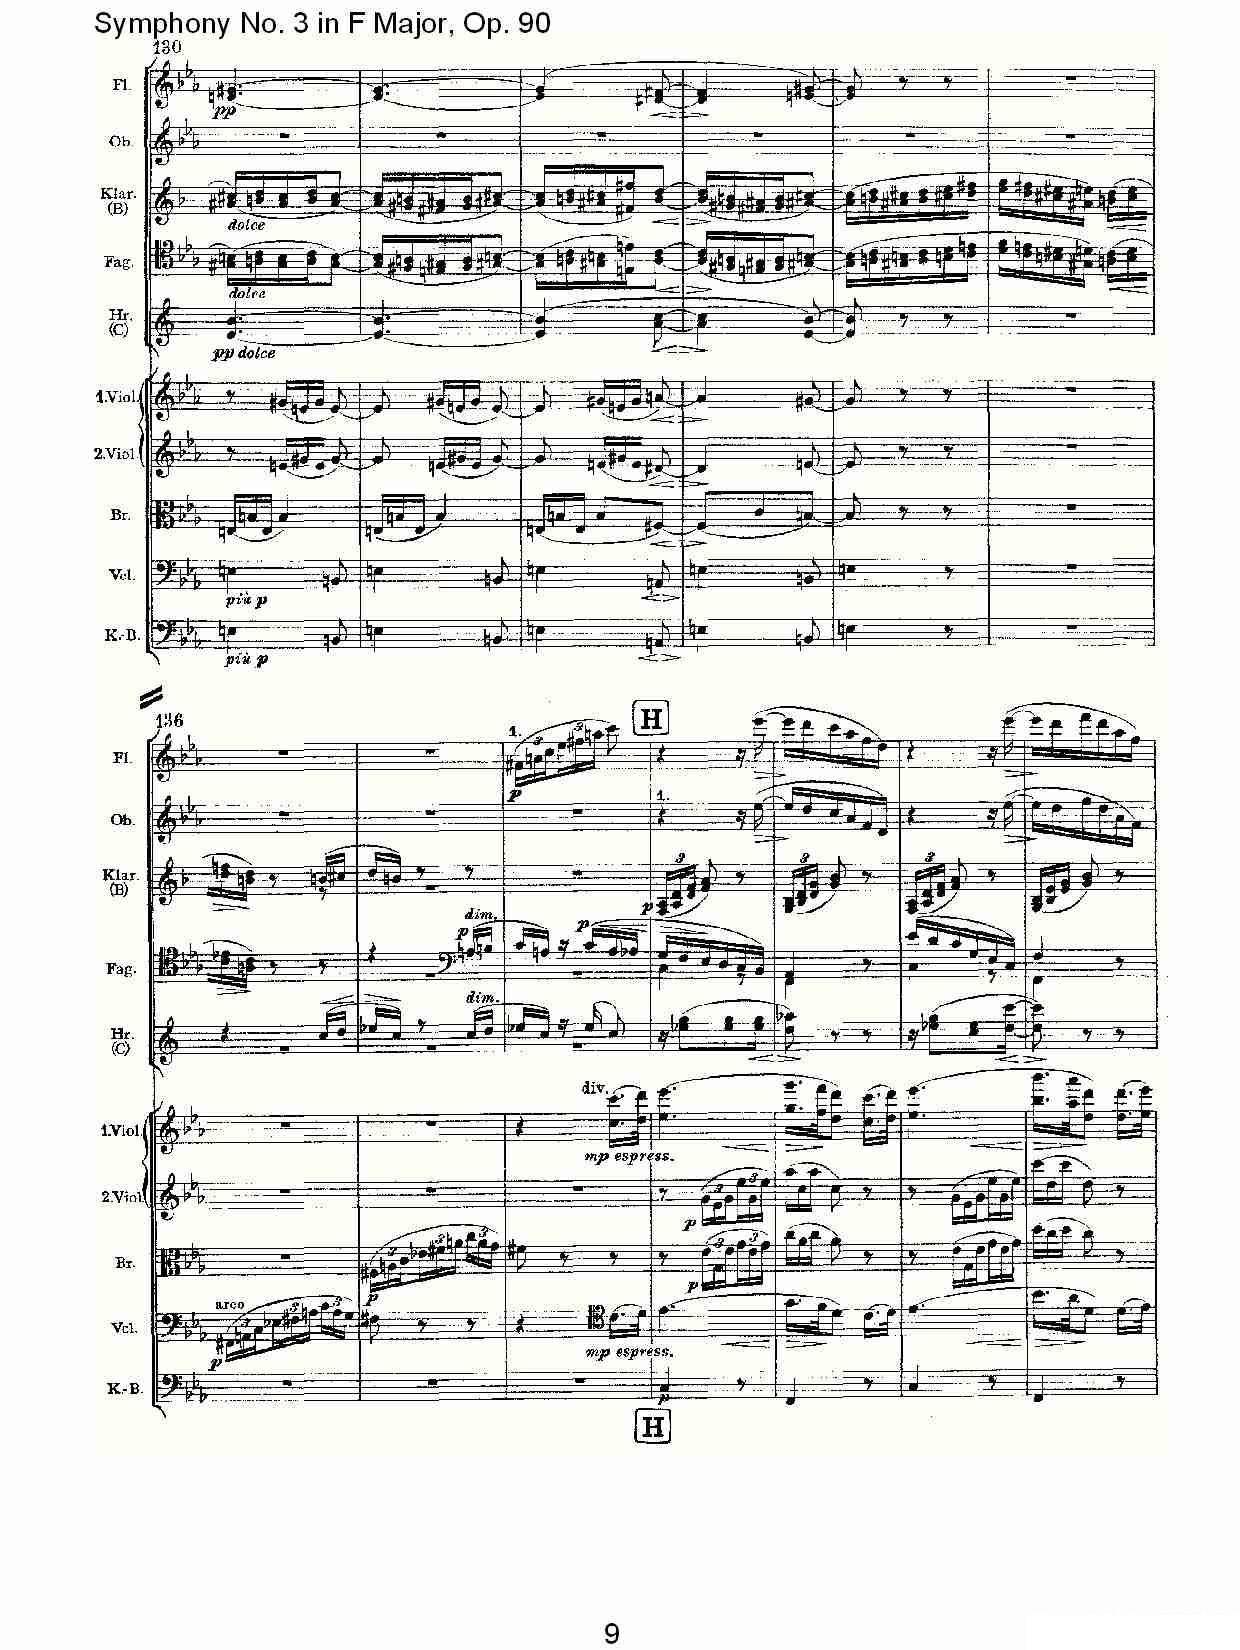 曲谱约翰内斯·勃拉姆斯《F大调第三交响曲, Op.90第三乐章》（第9页）